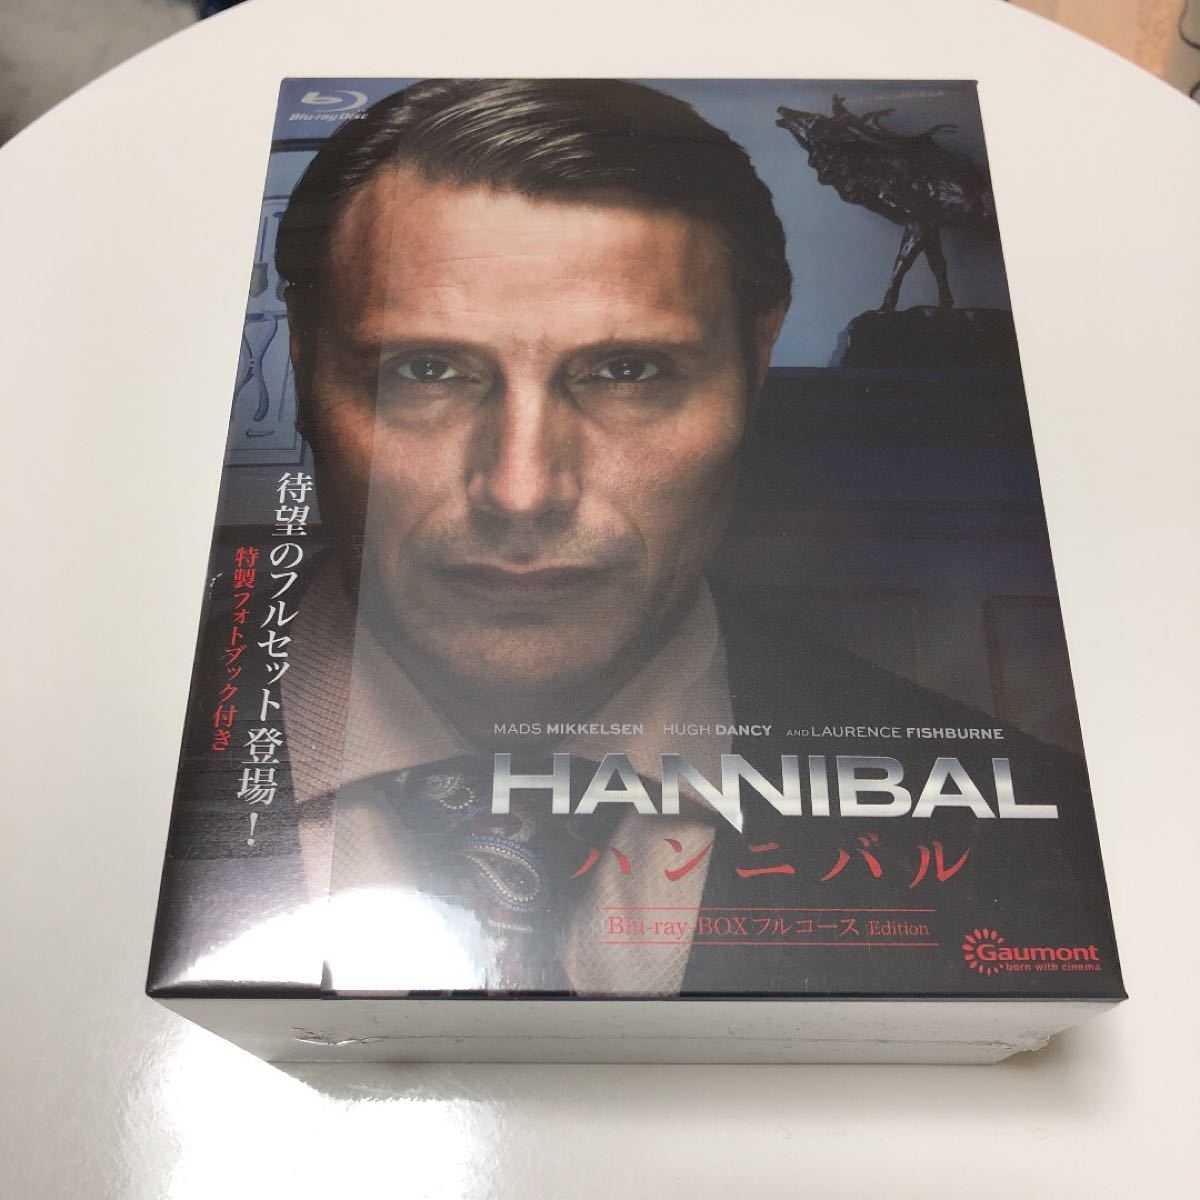 至高 HANNIBAL ハンニバル Blu-ray-BOX フルコースEdition 